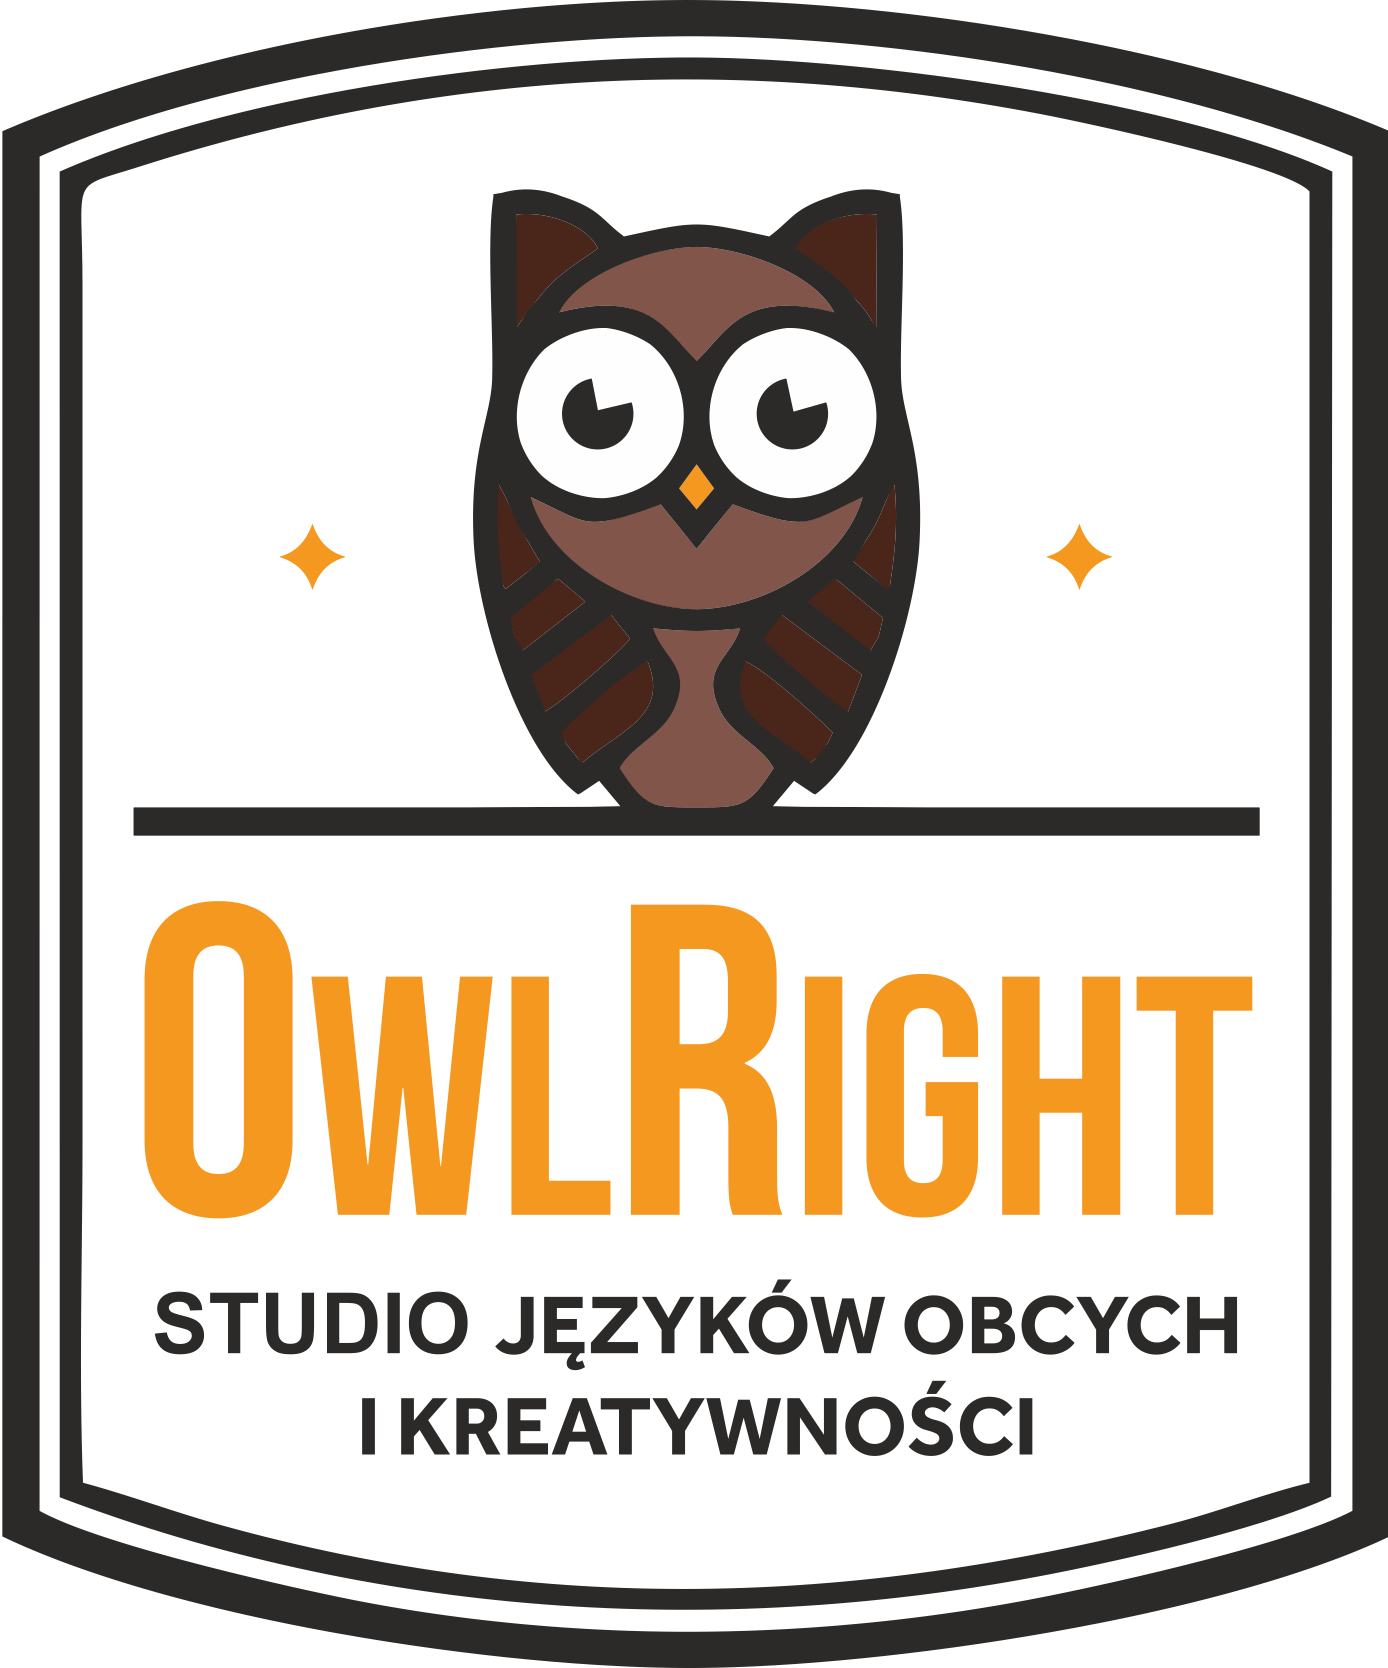 OwlRight studio języków obcych i kreatywności